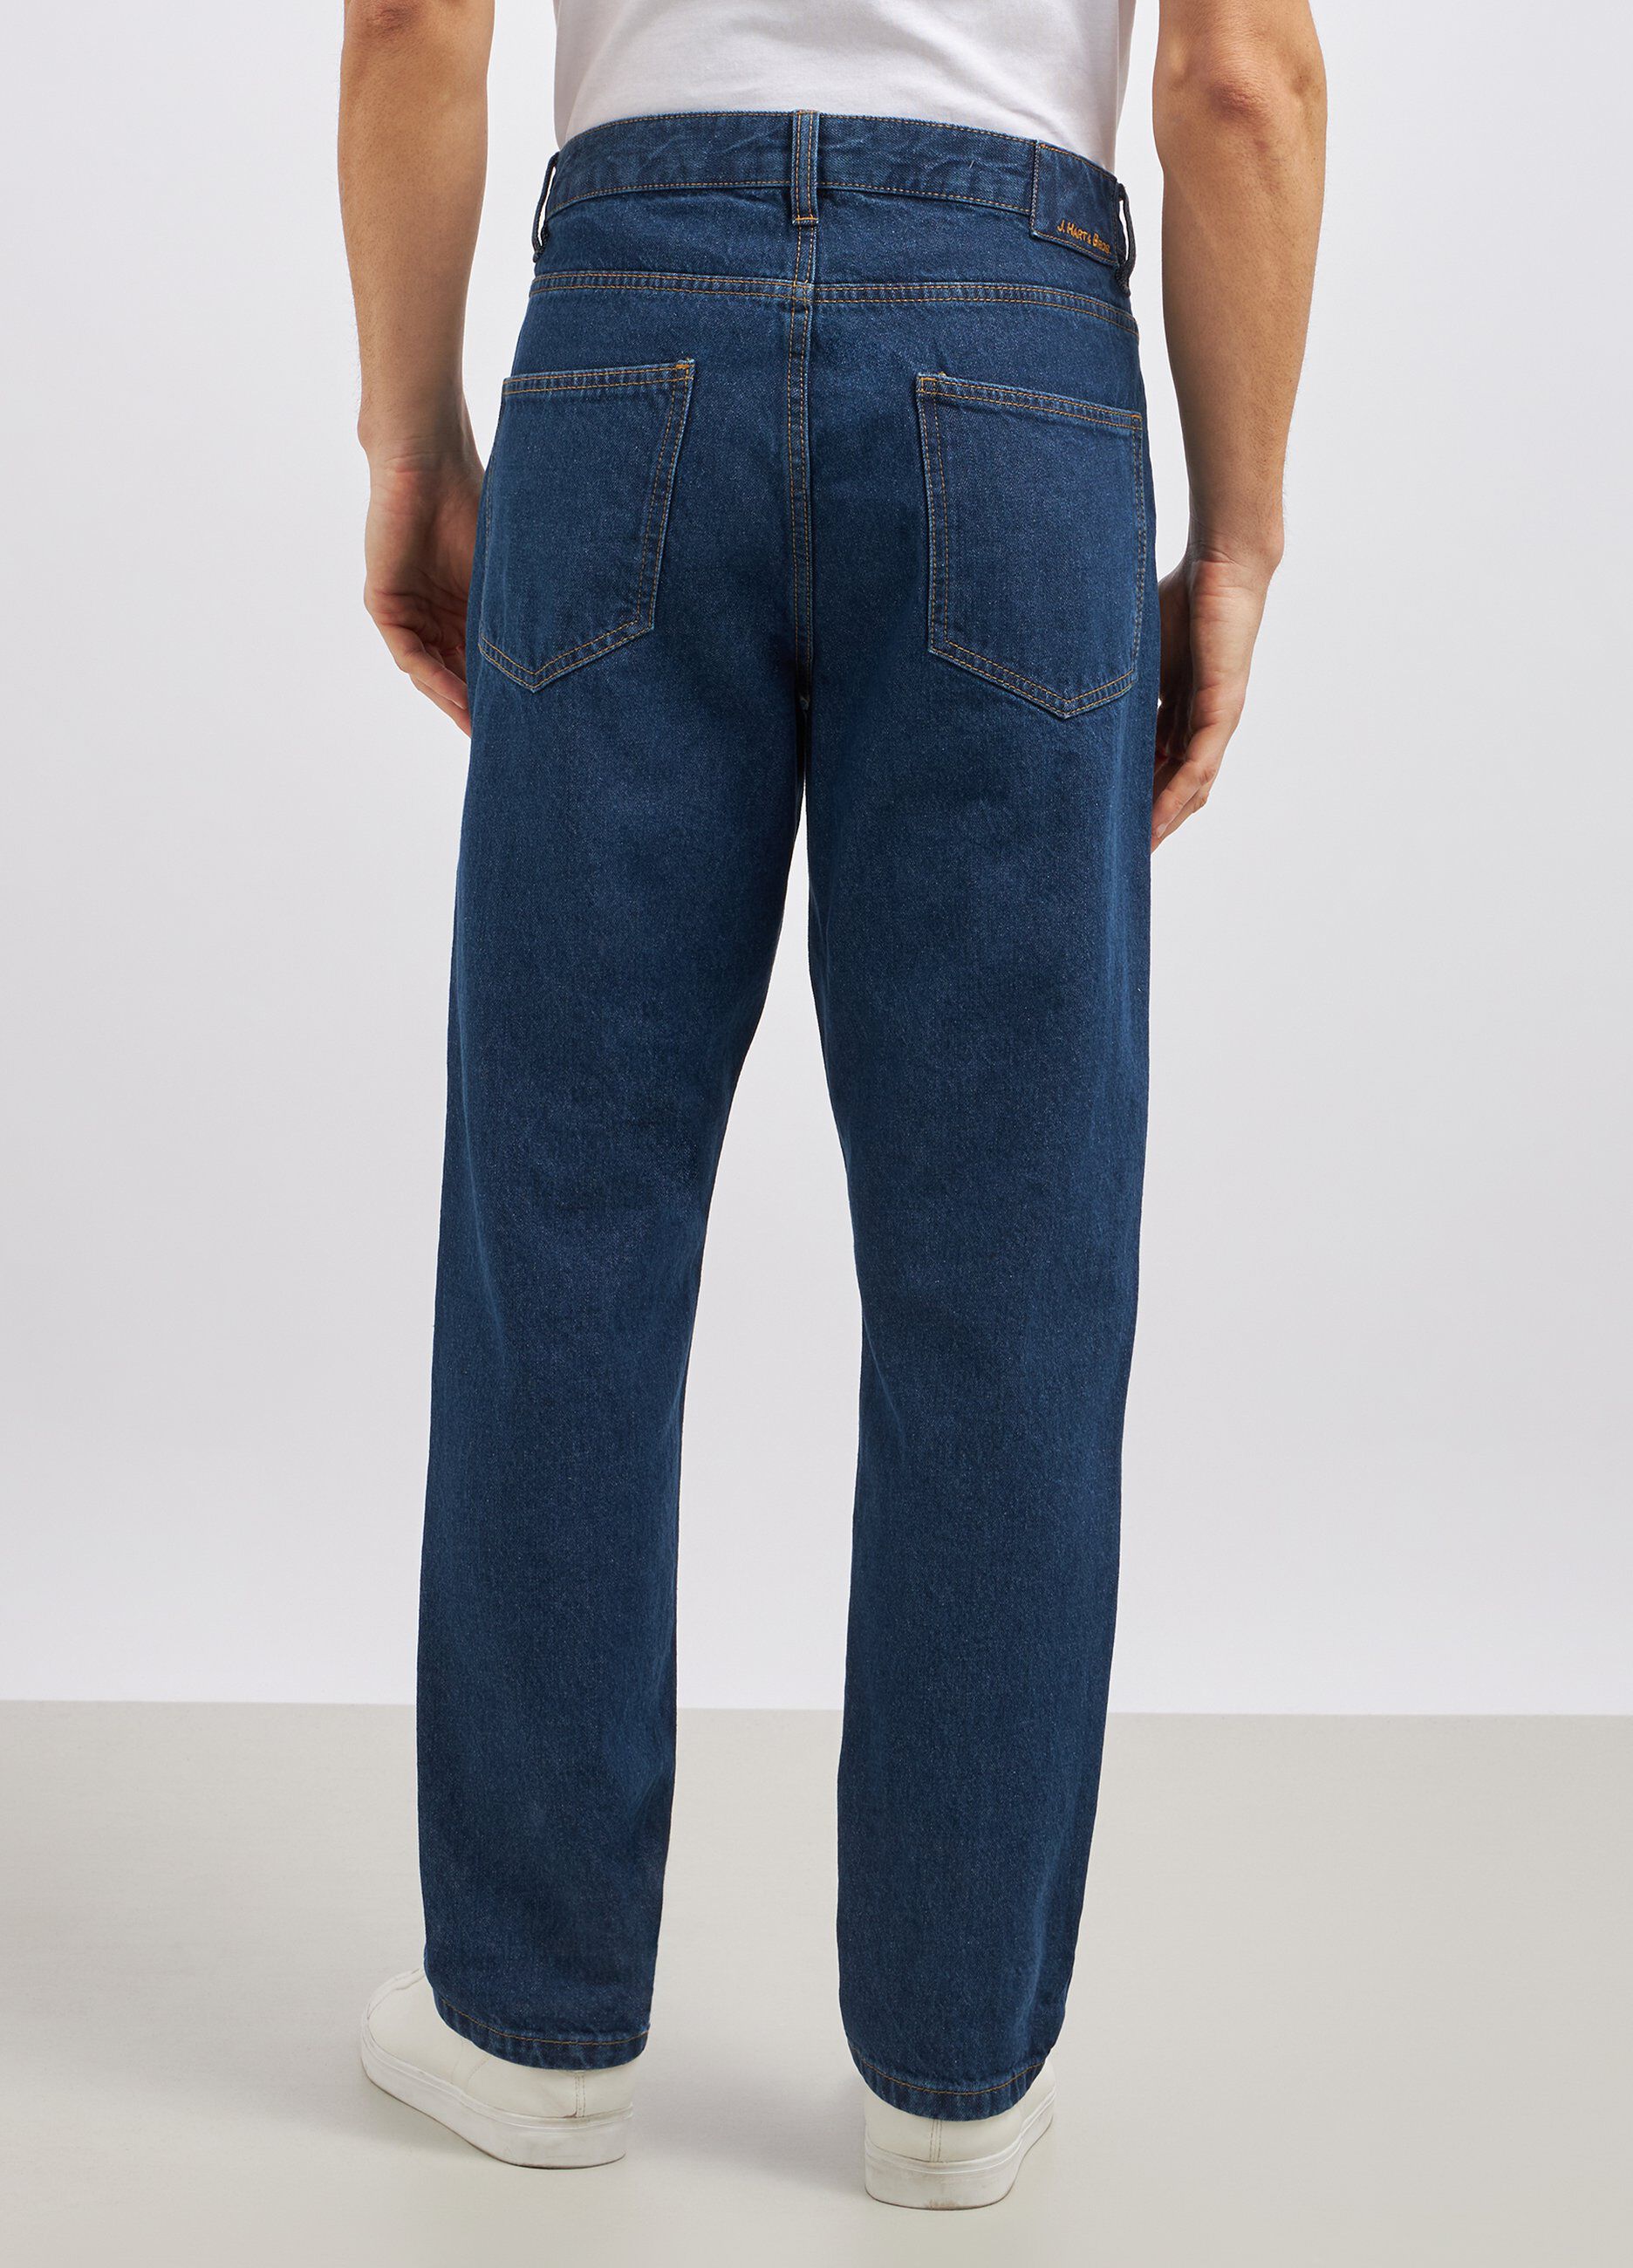 Jeans straight in puro cotone uomo_2